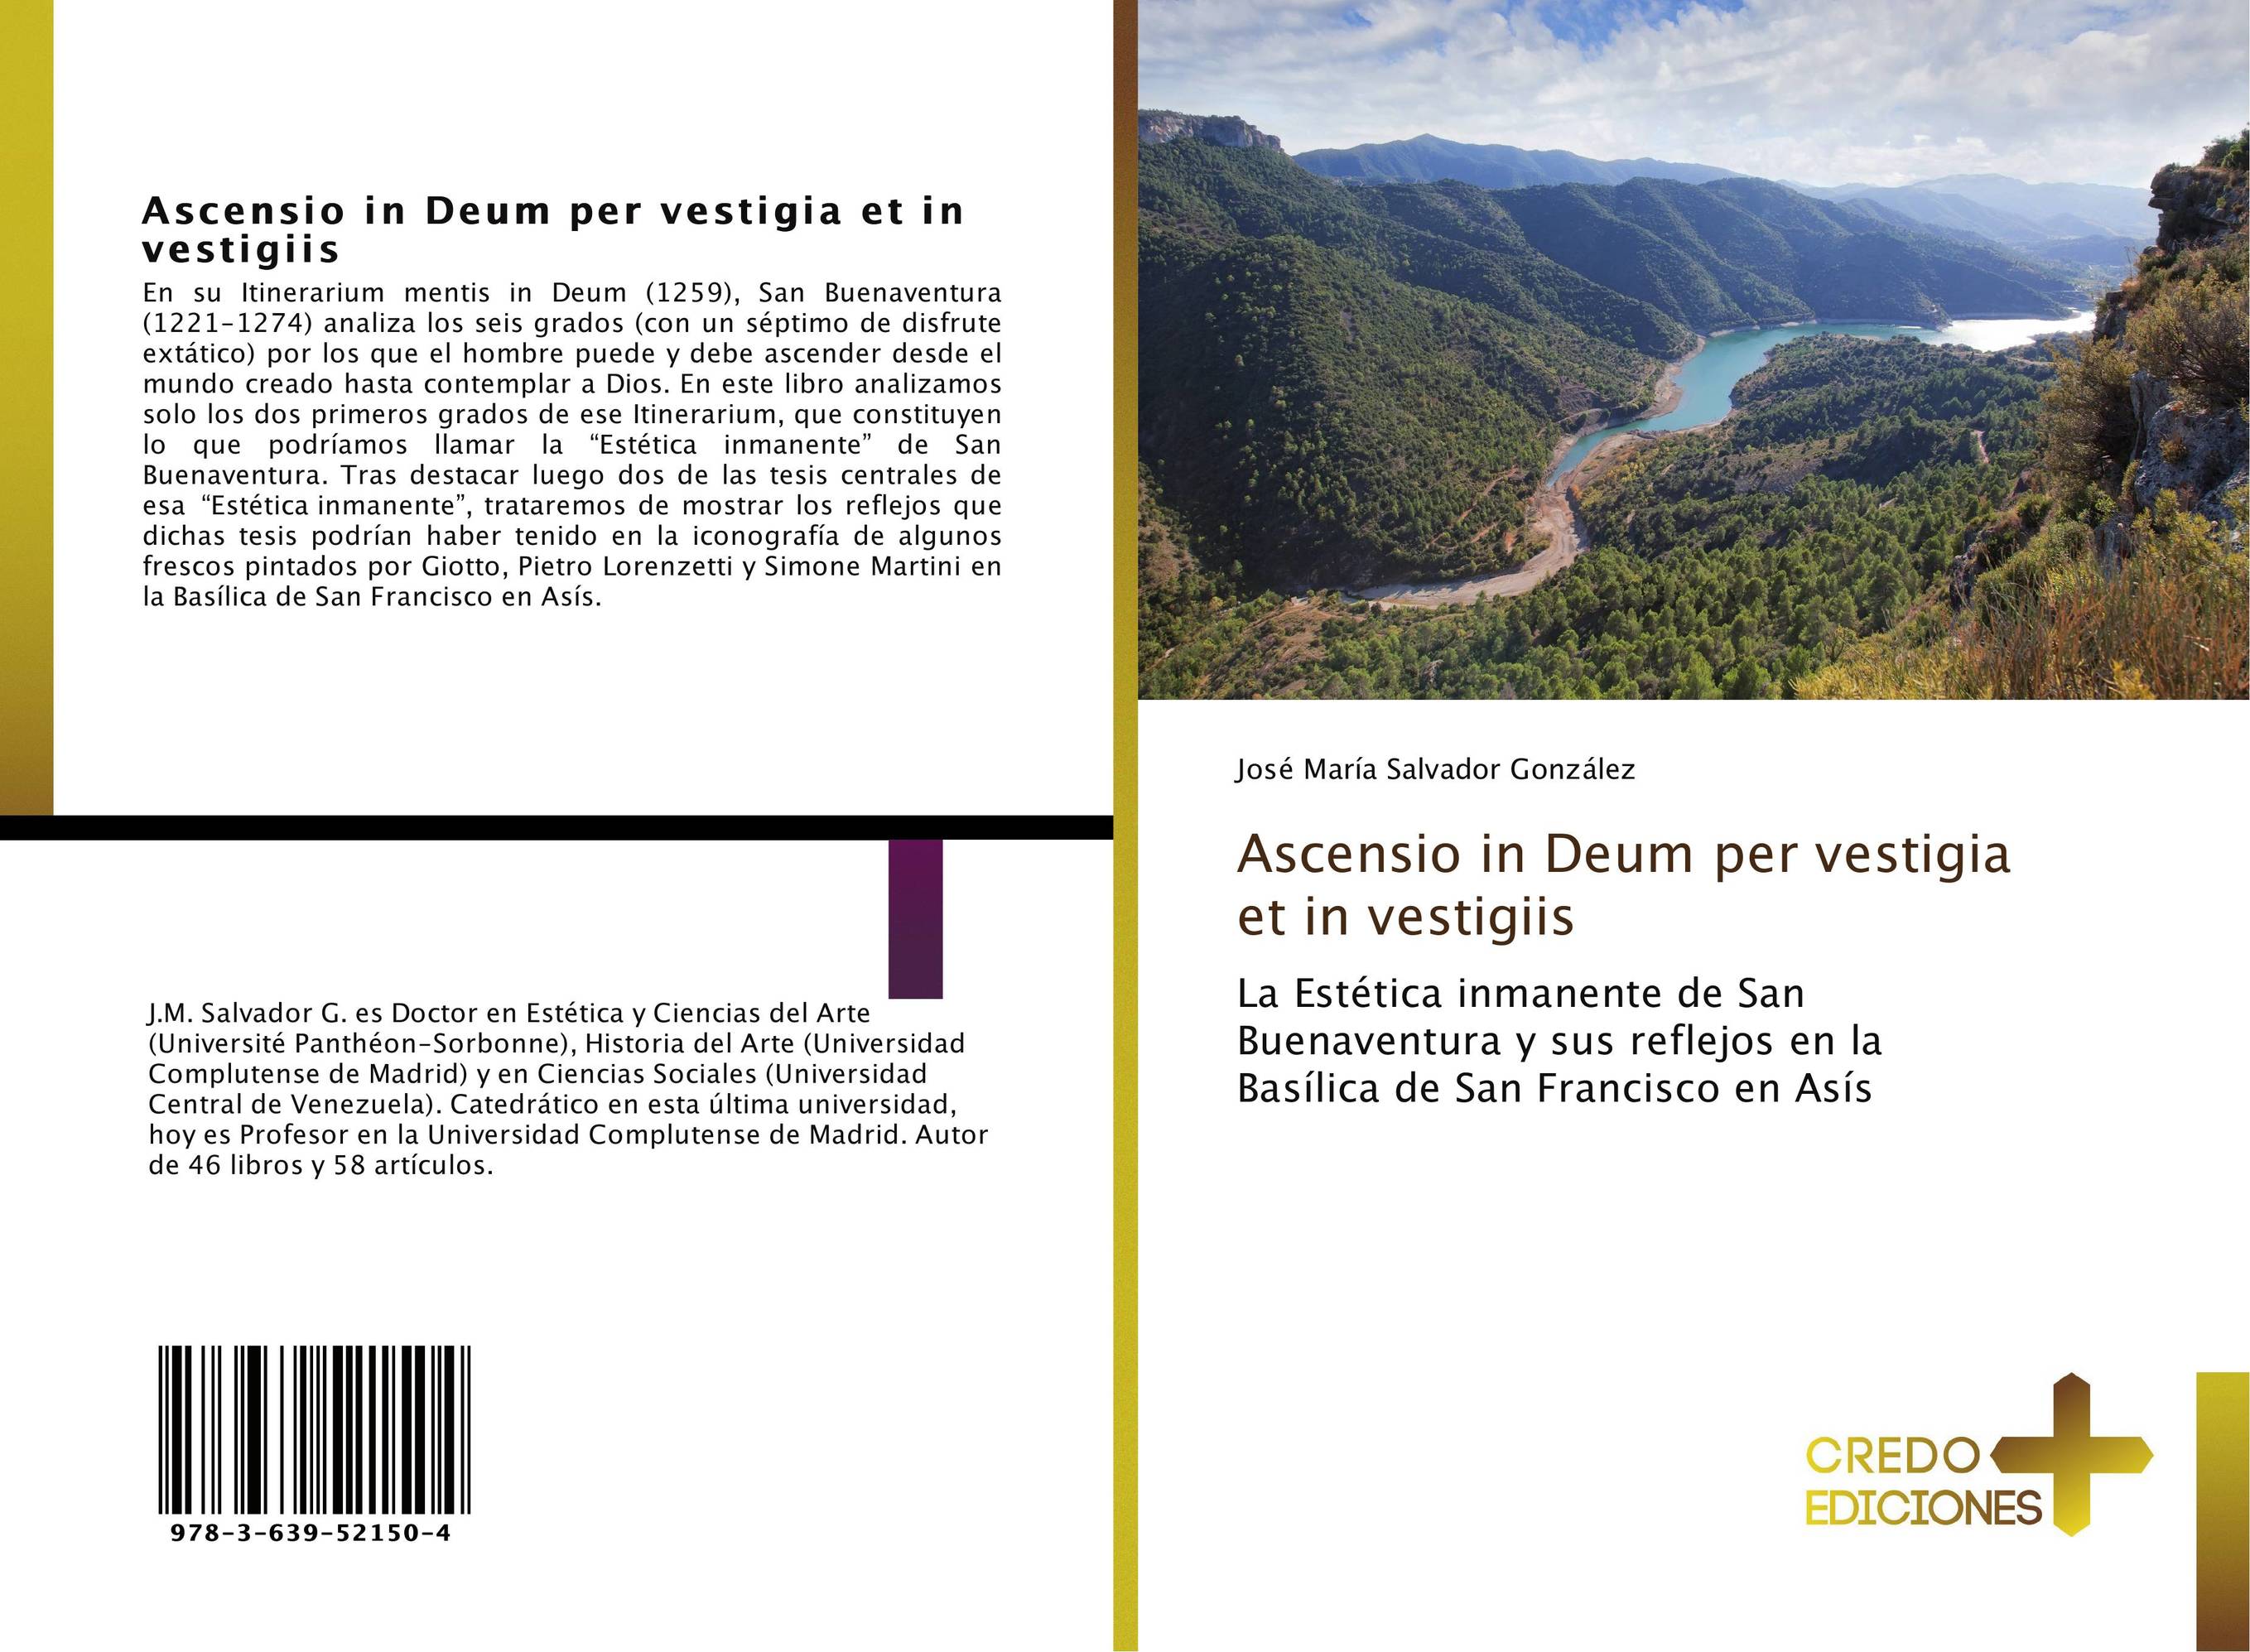 Ascensio in Deum per vestigia et in vestigiis